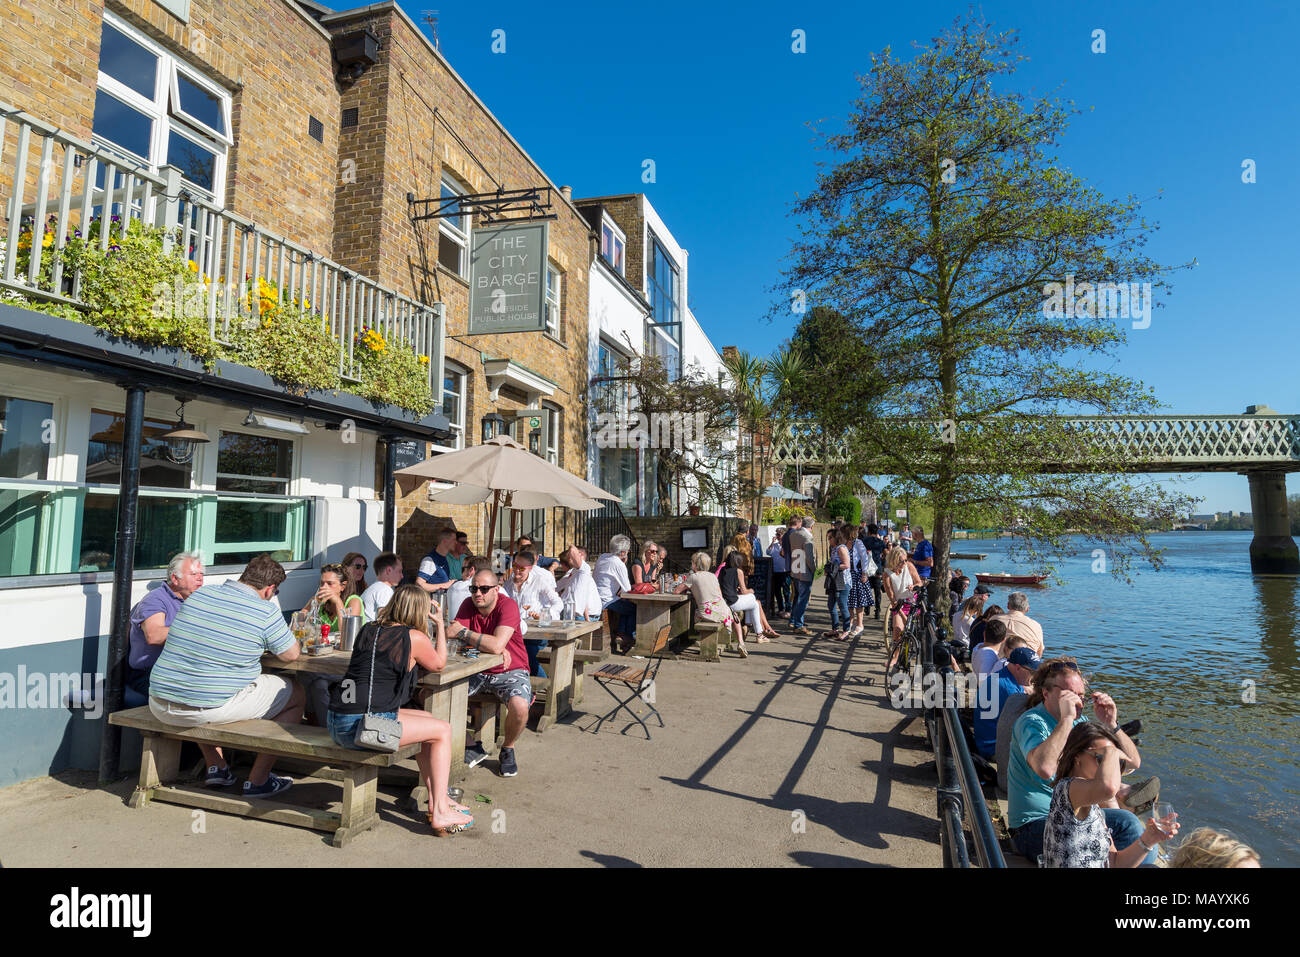 La ville au bord de la Thames Barge pub, Strand-sur-le-vert, Chiswick, Londres, UK Banque D'Images